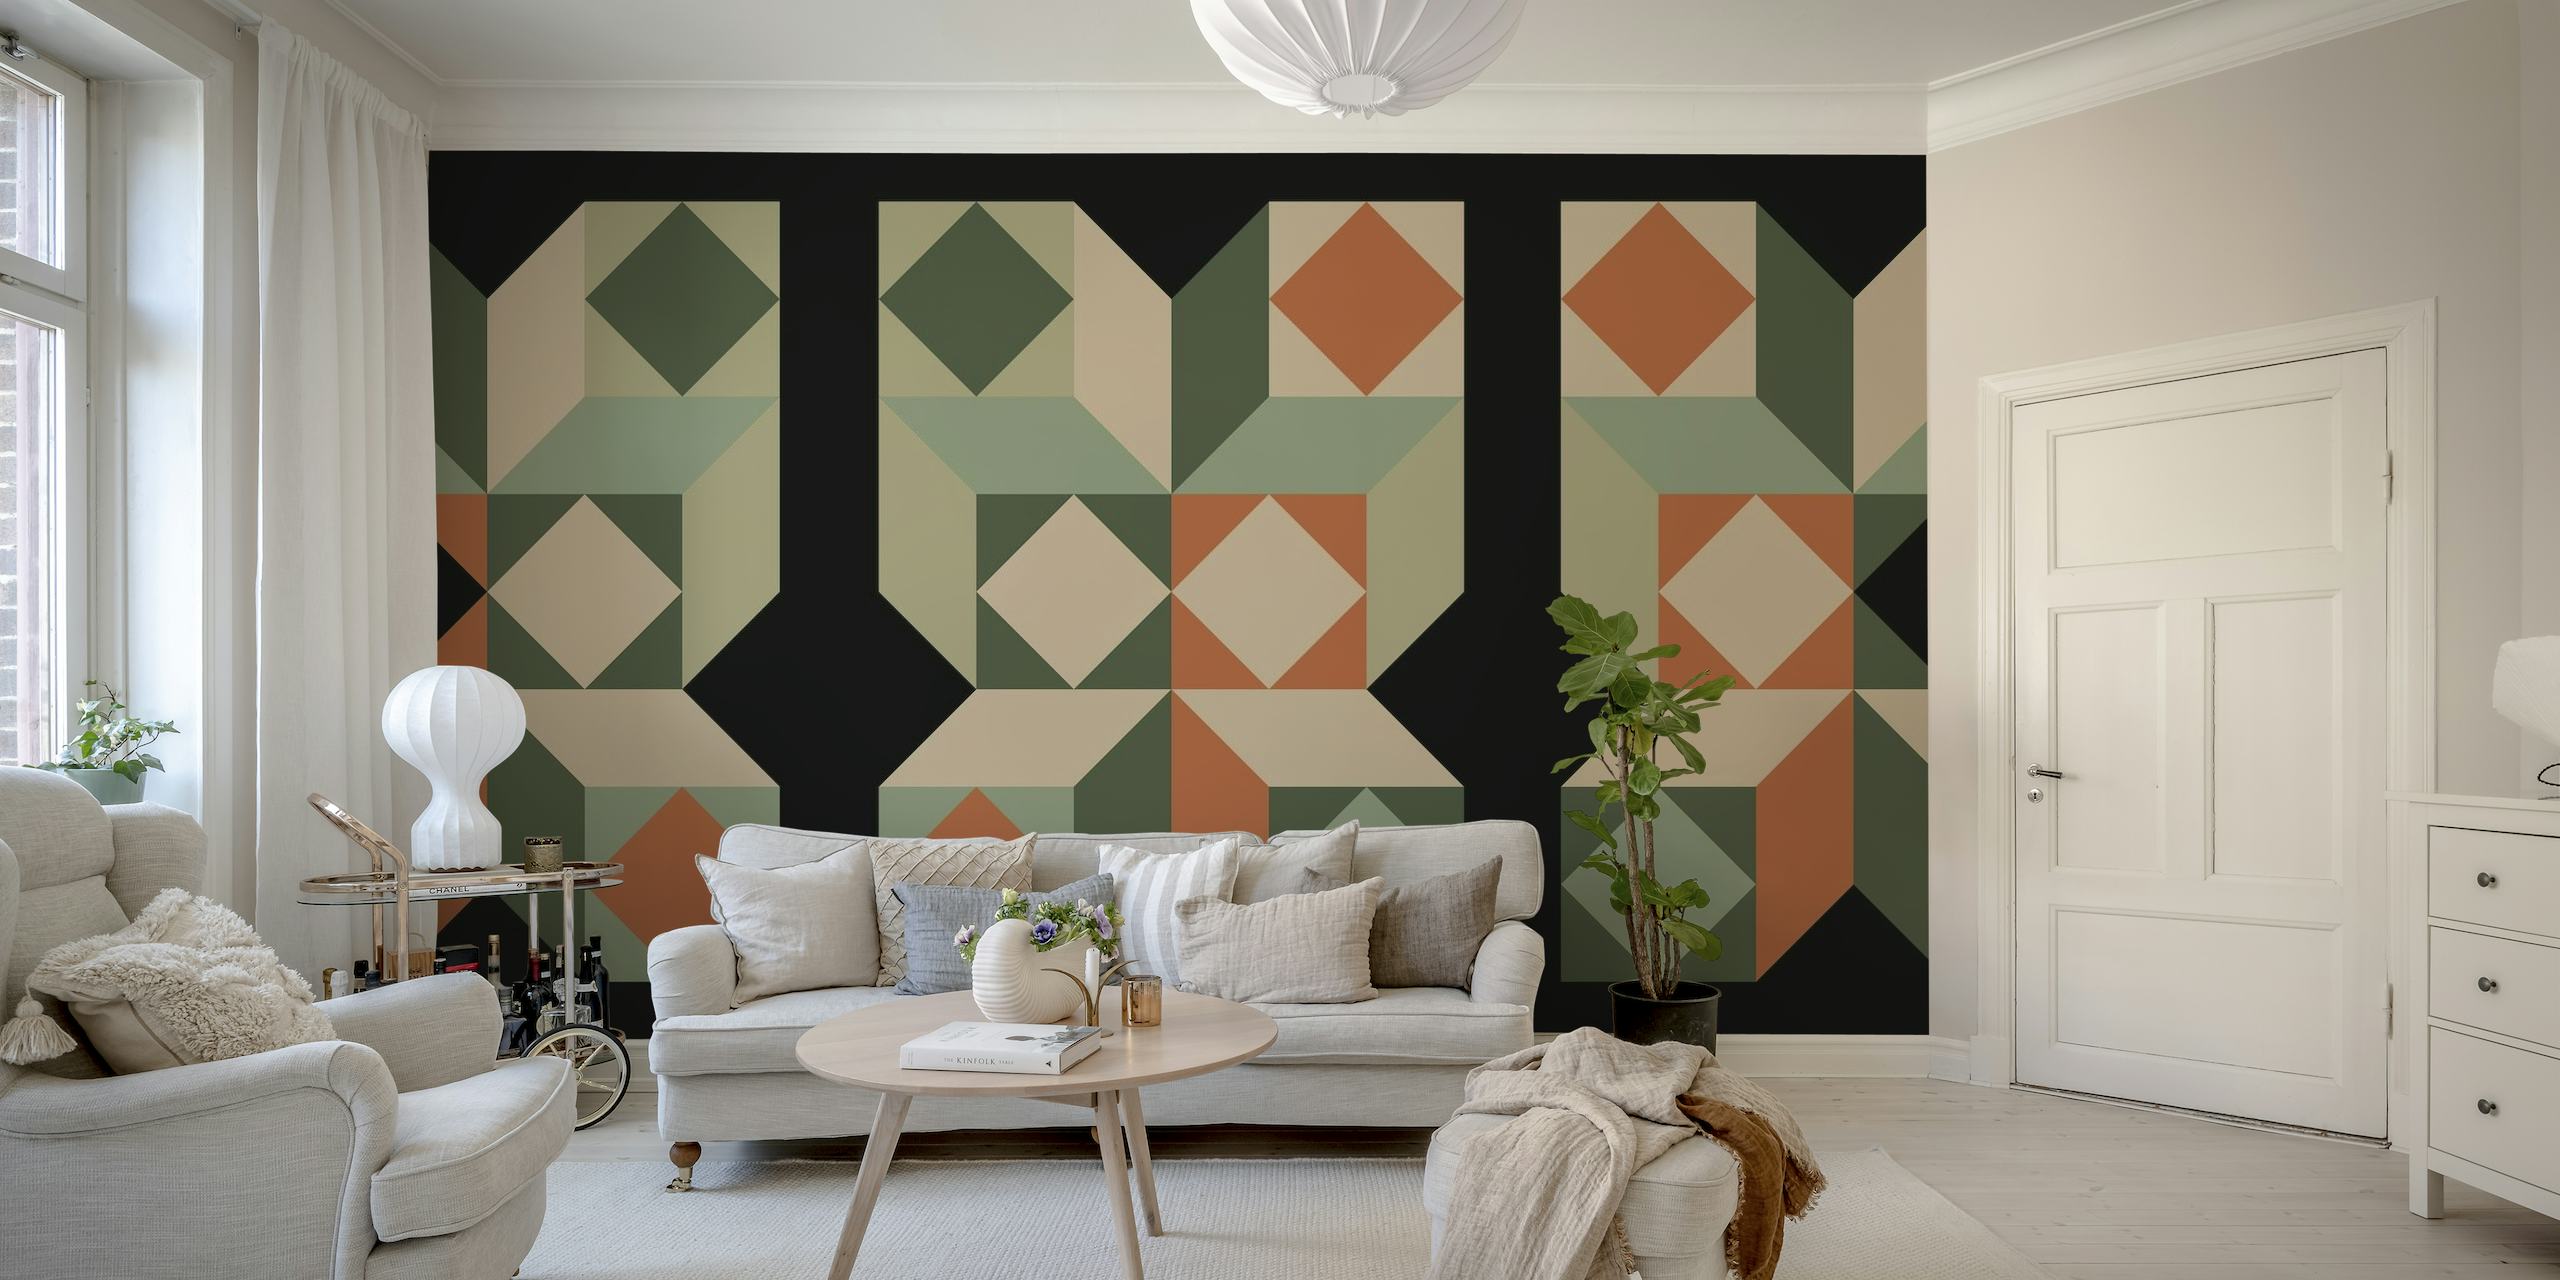 Midcentury Bauhausin inspiroima seinämaalaus, jossa on geometrisia kuvioita vihreän, oranssin ja neutraalin sävyin.